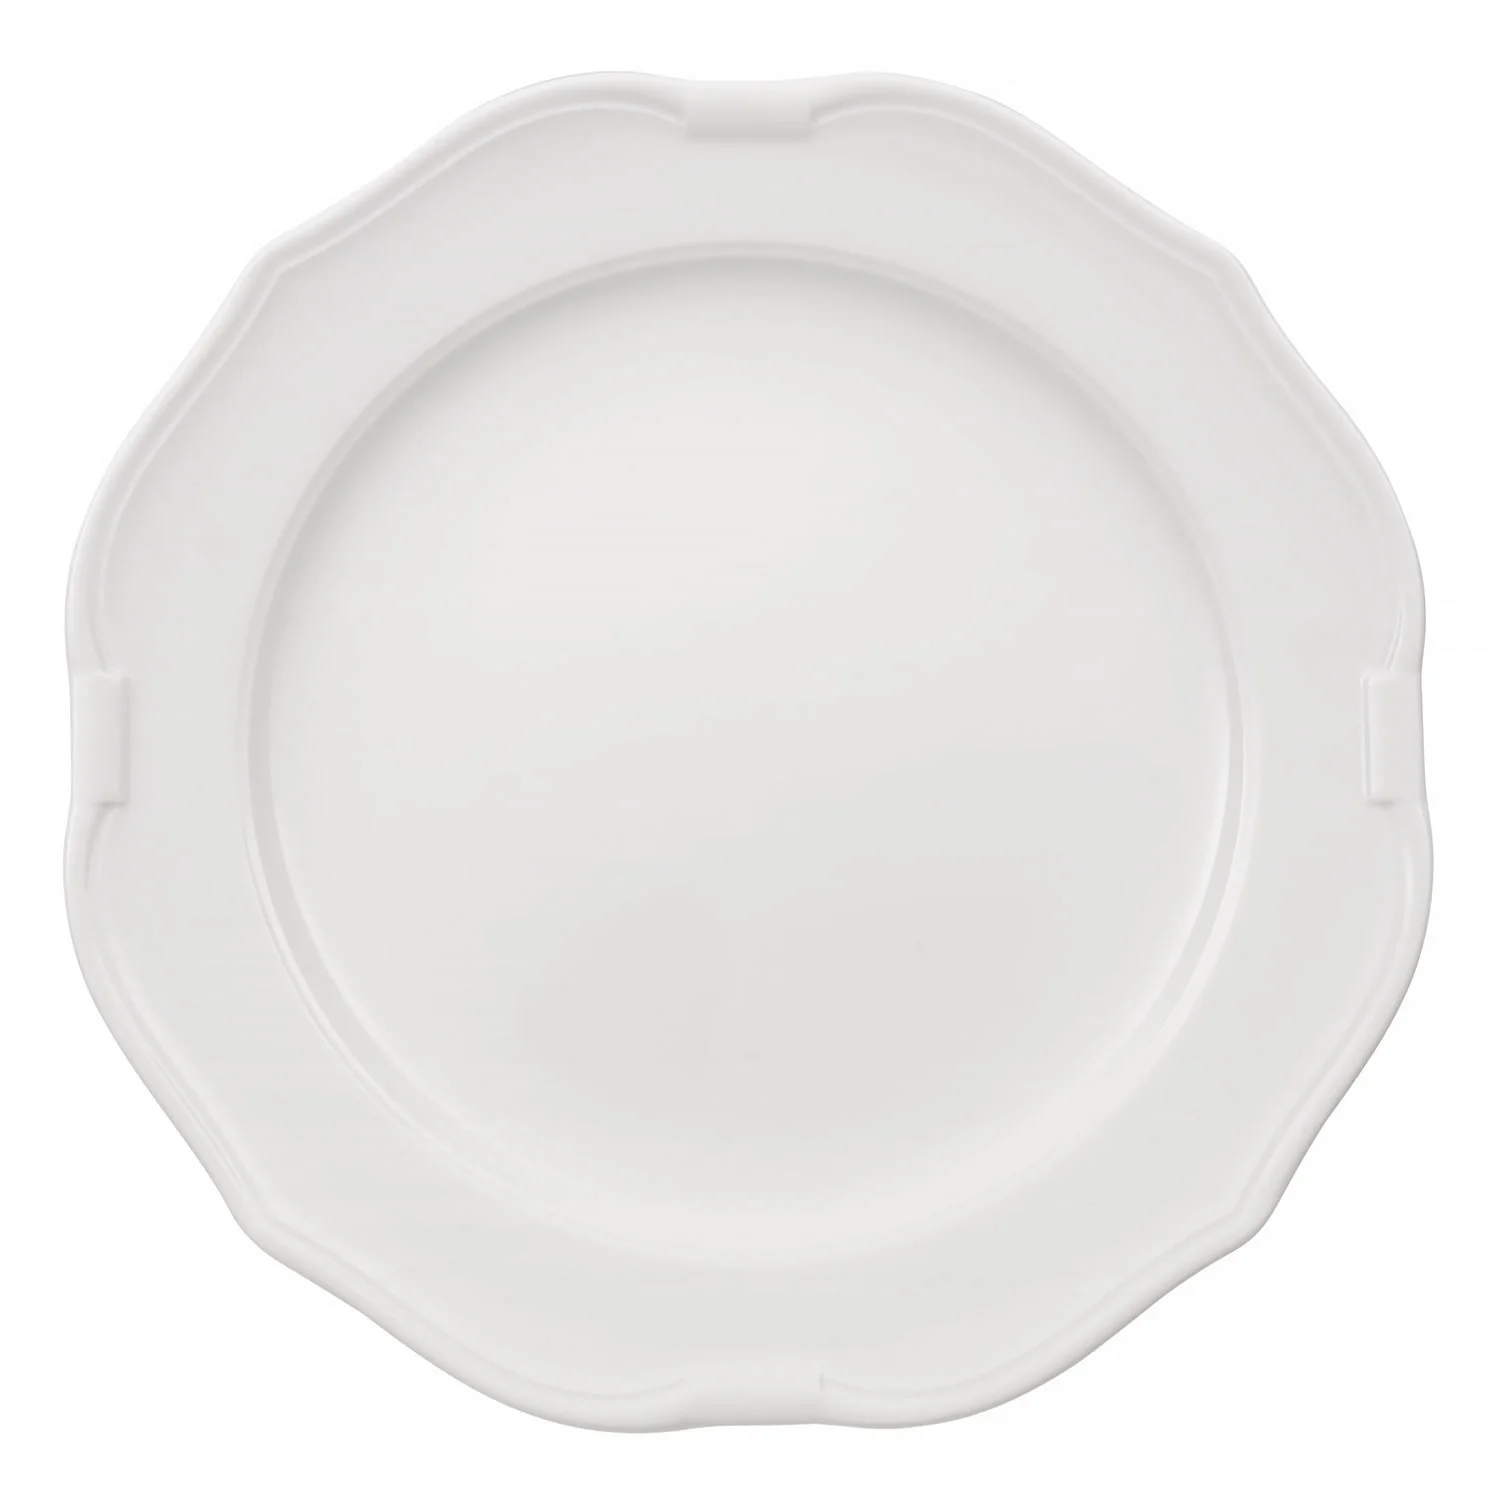 La Scala White Плоская тарелка 29 см